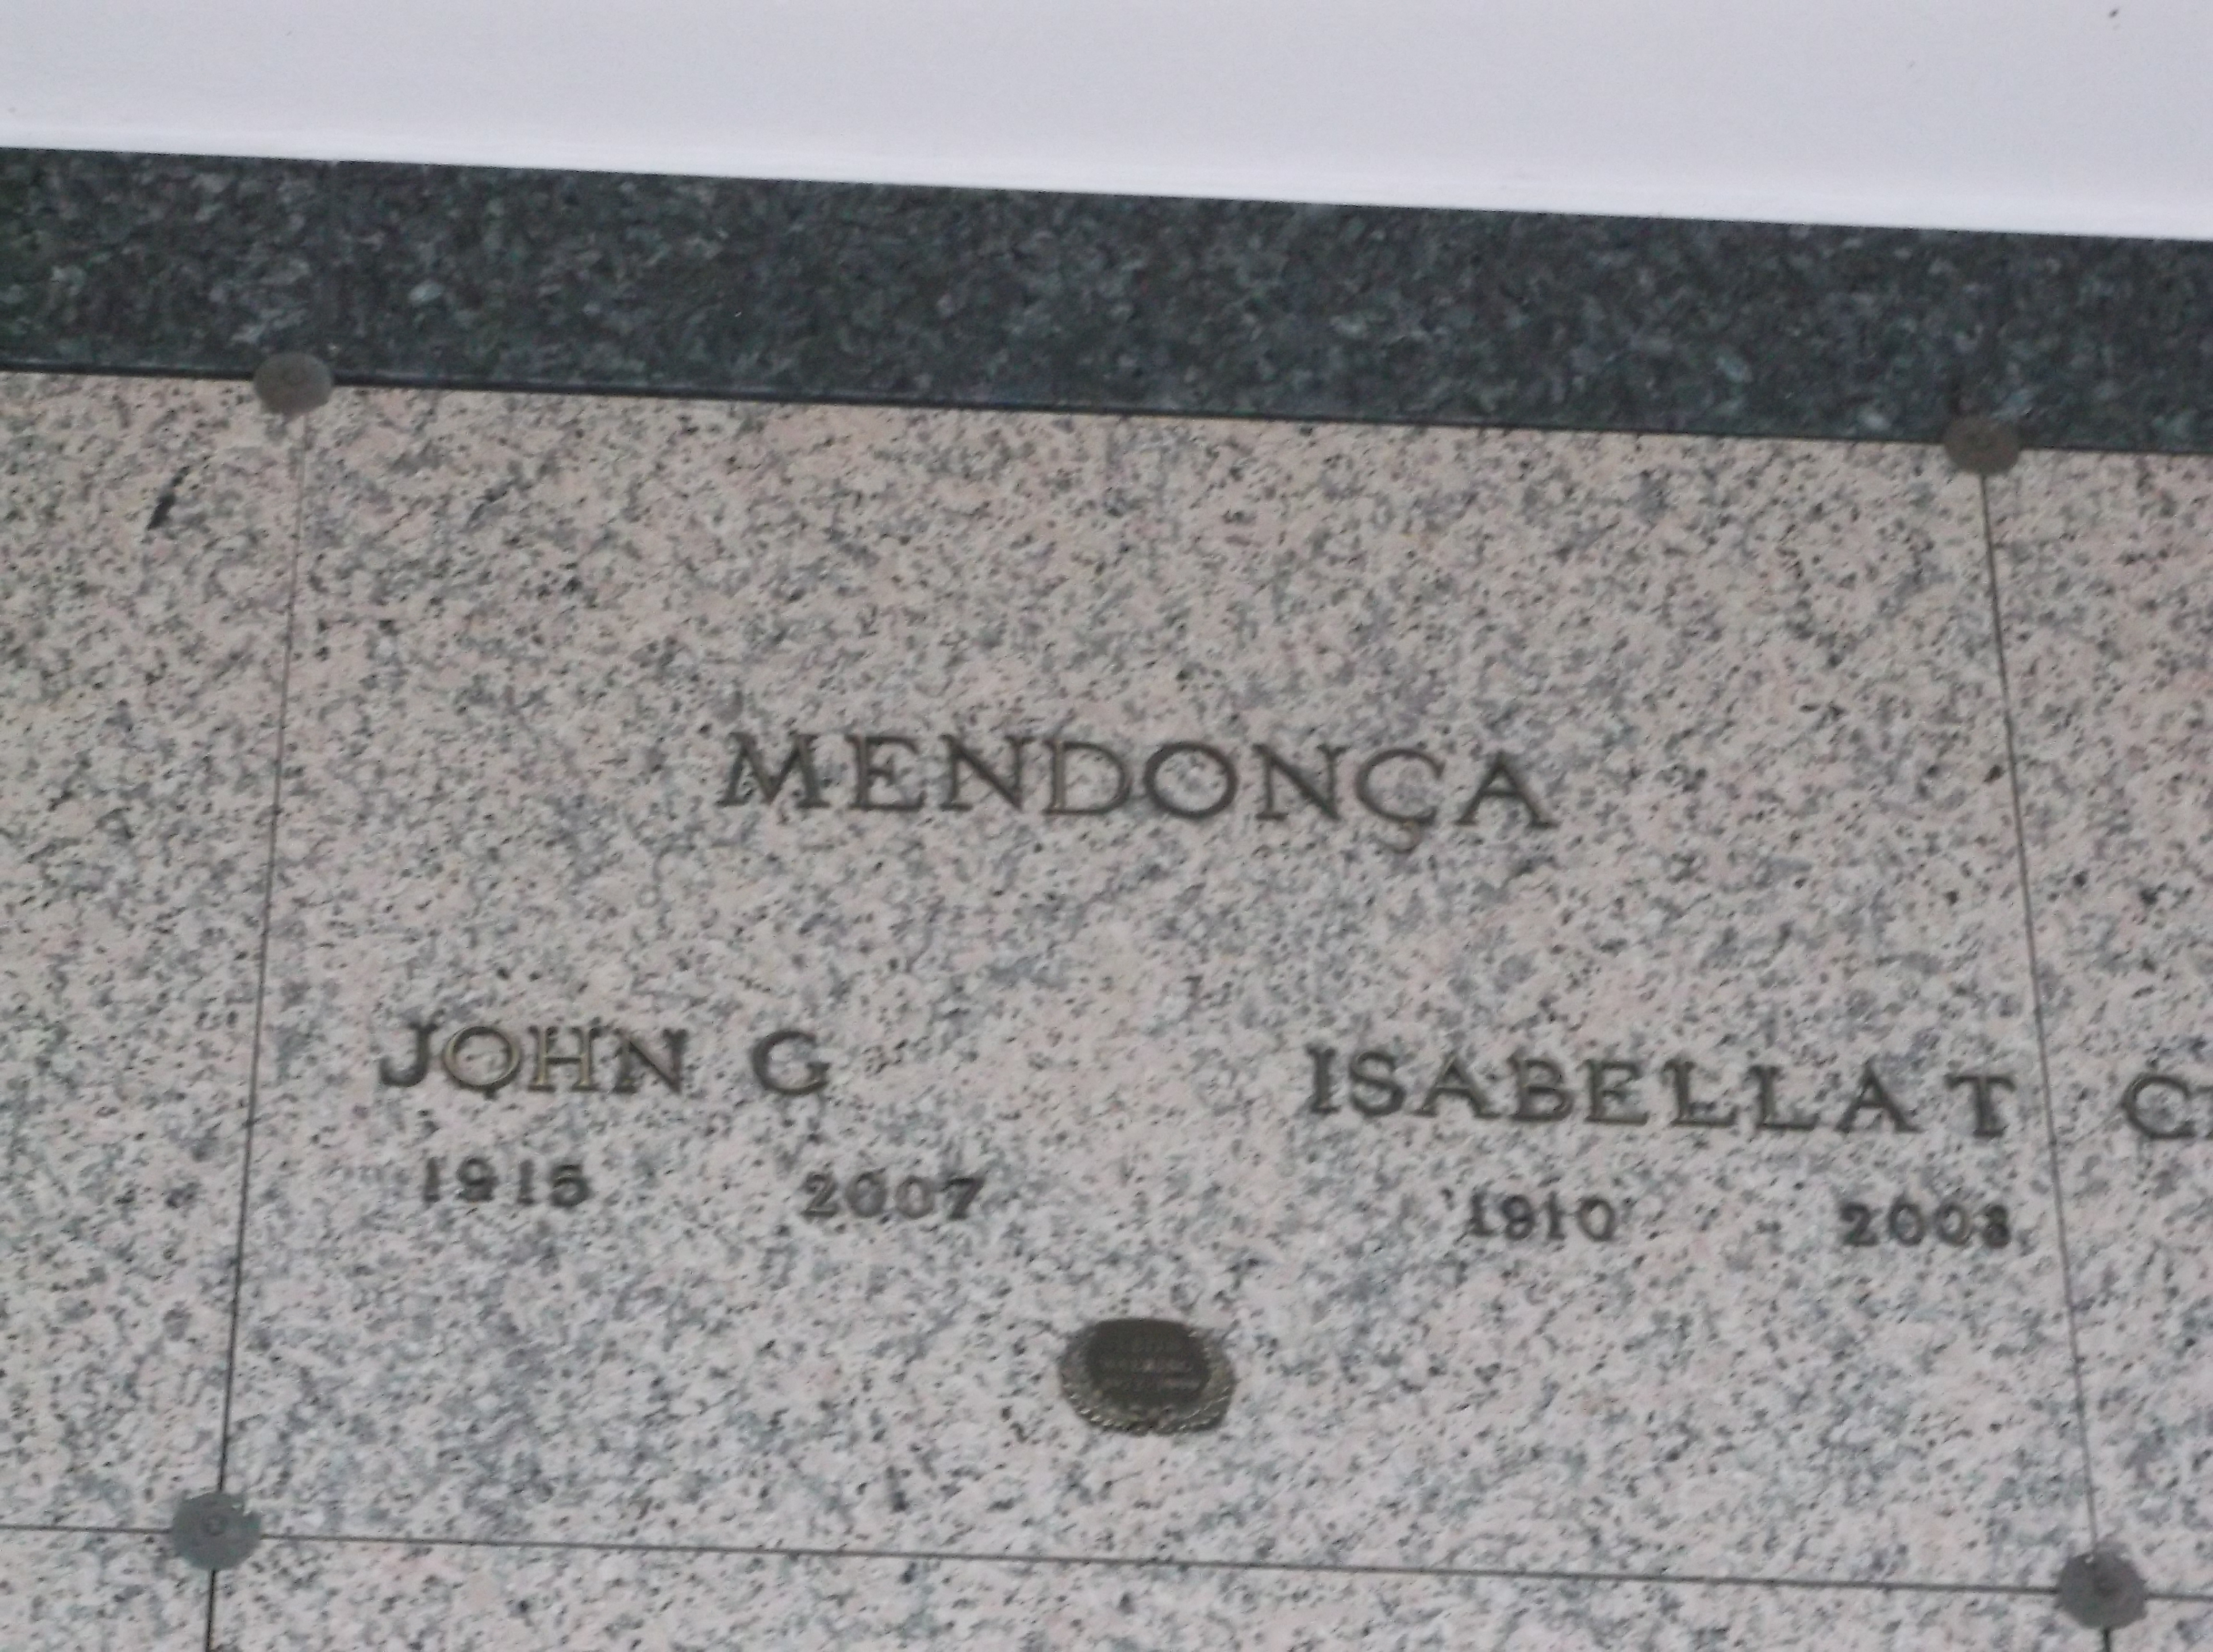 John G Mendonca